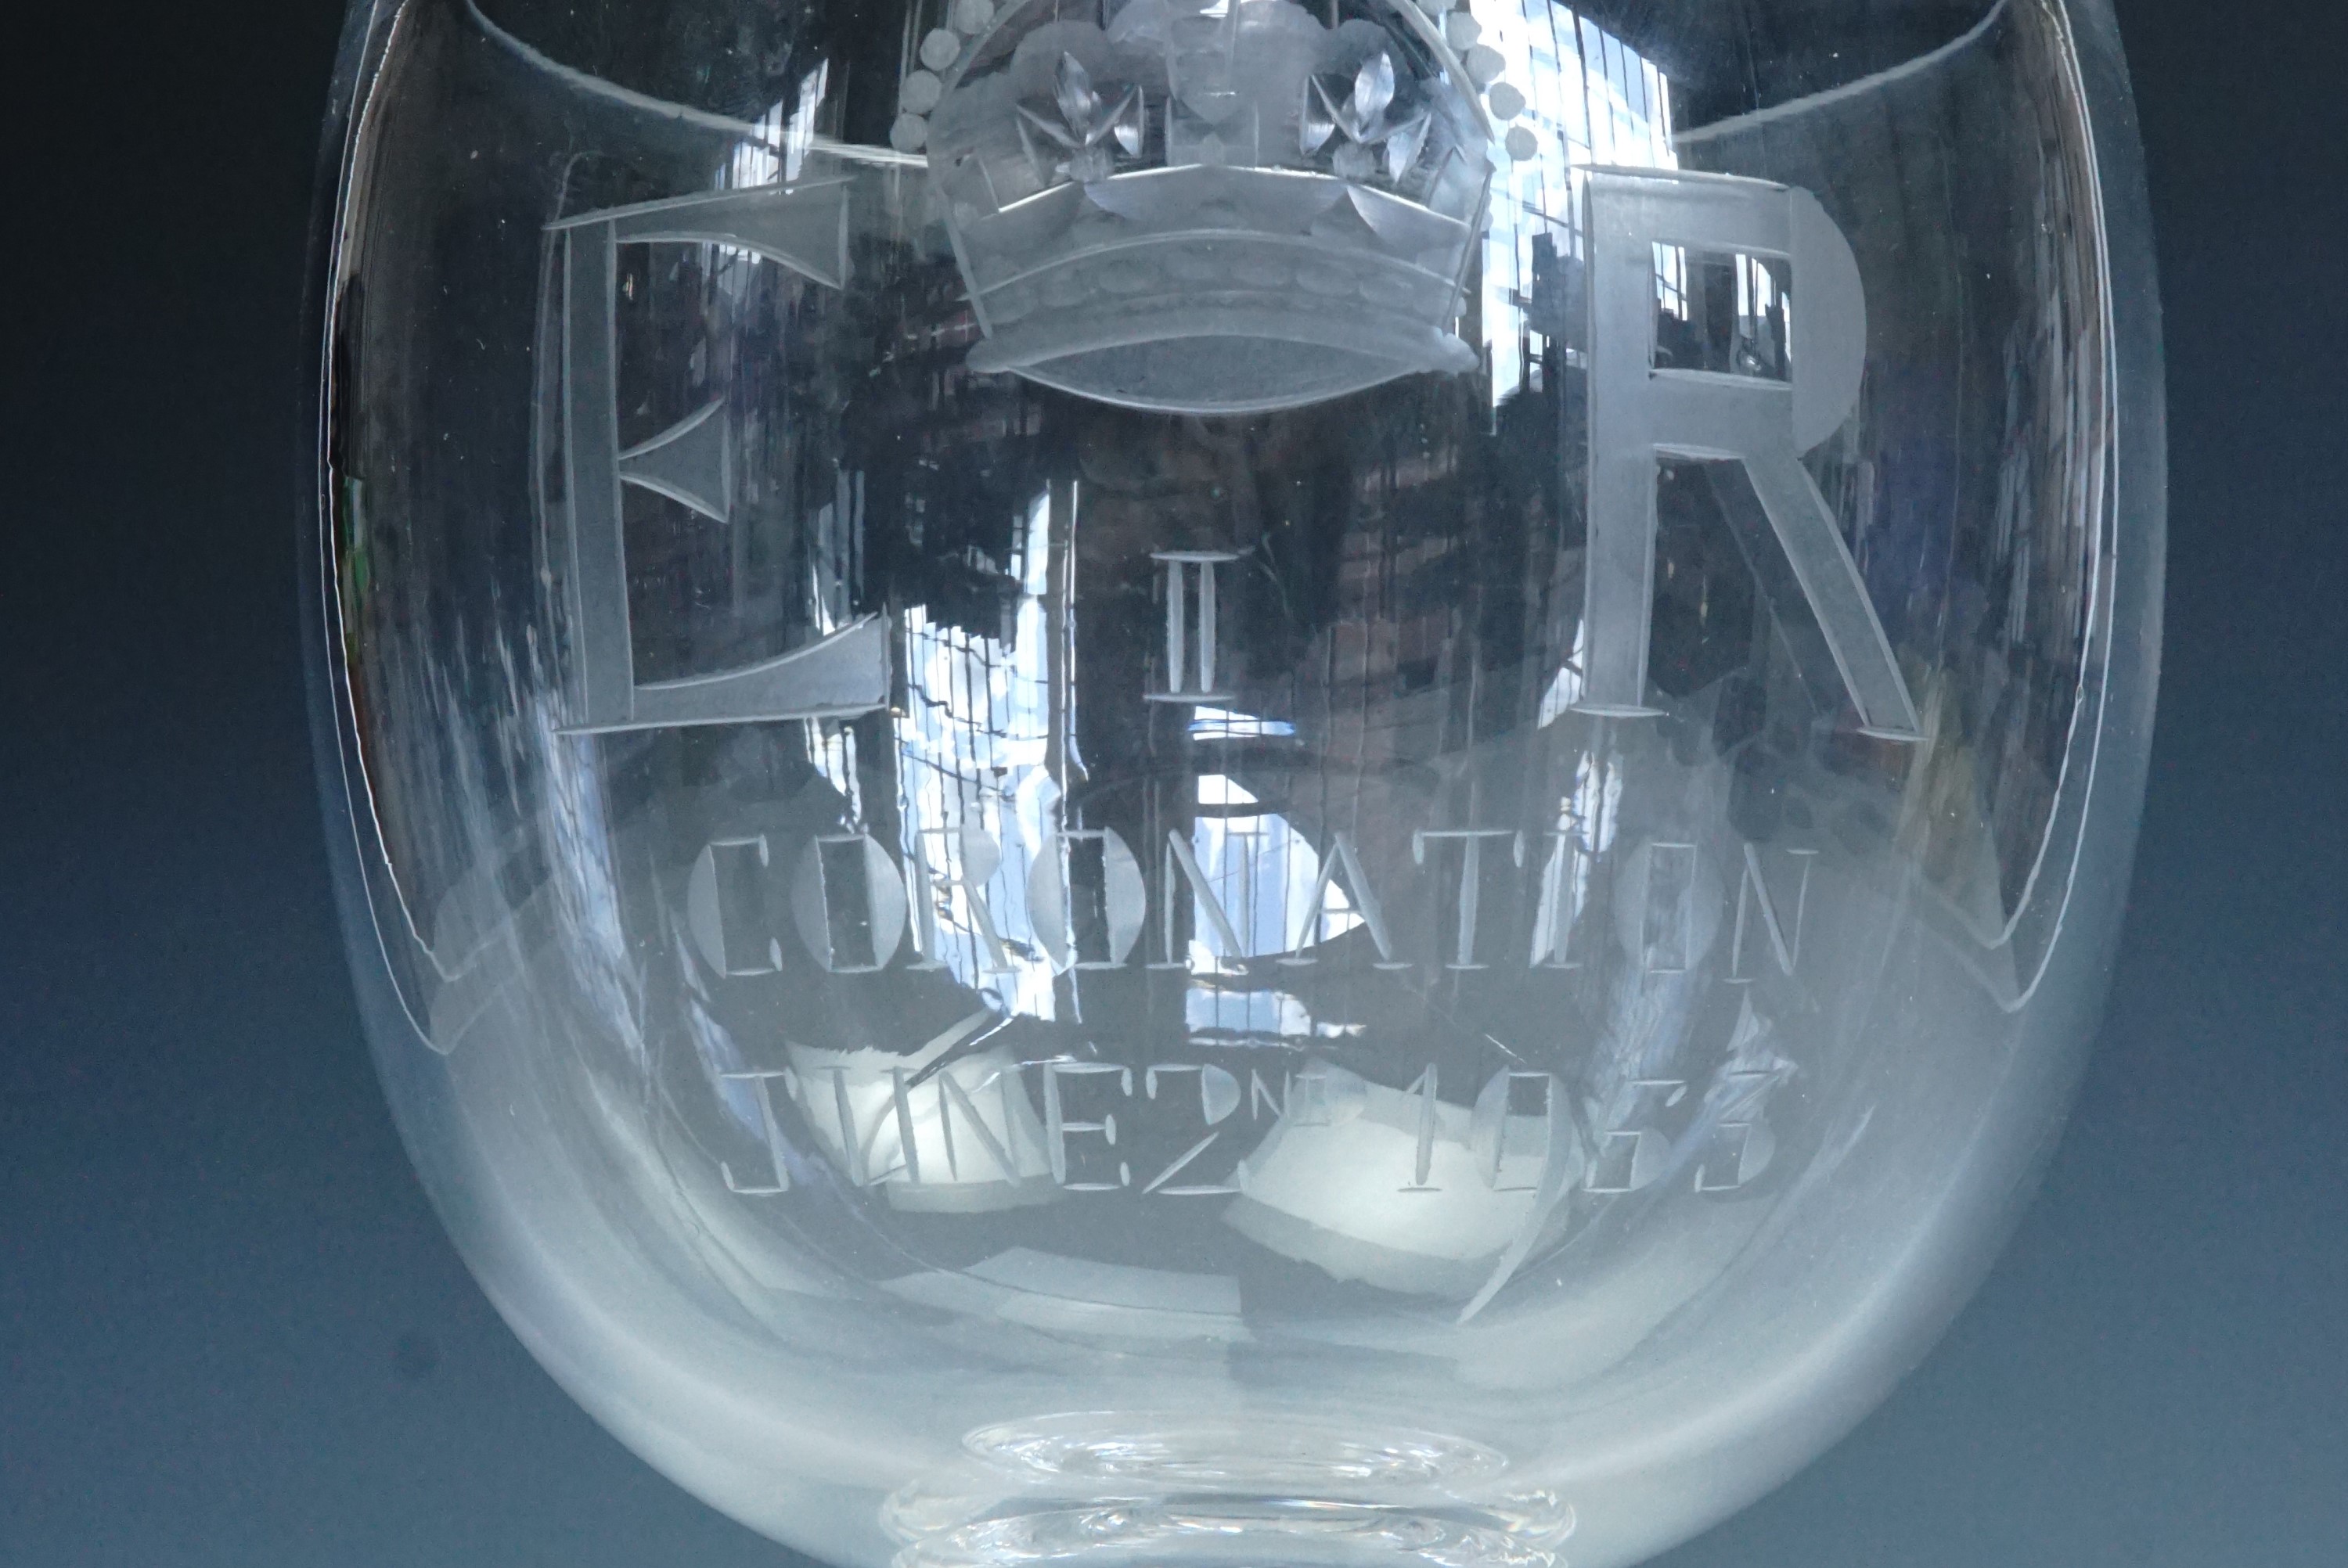 An Elizabeth II Coronation wheel-cut free-blown glass chalice, 21 cm - Image 2 of 2